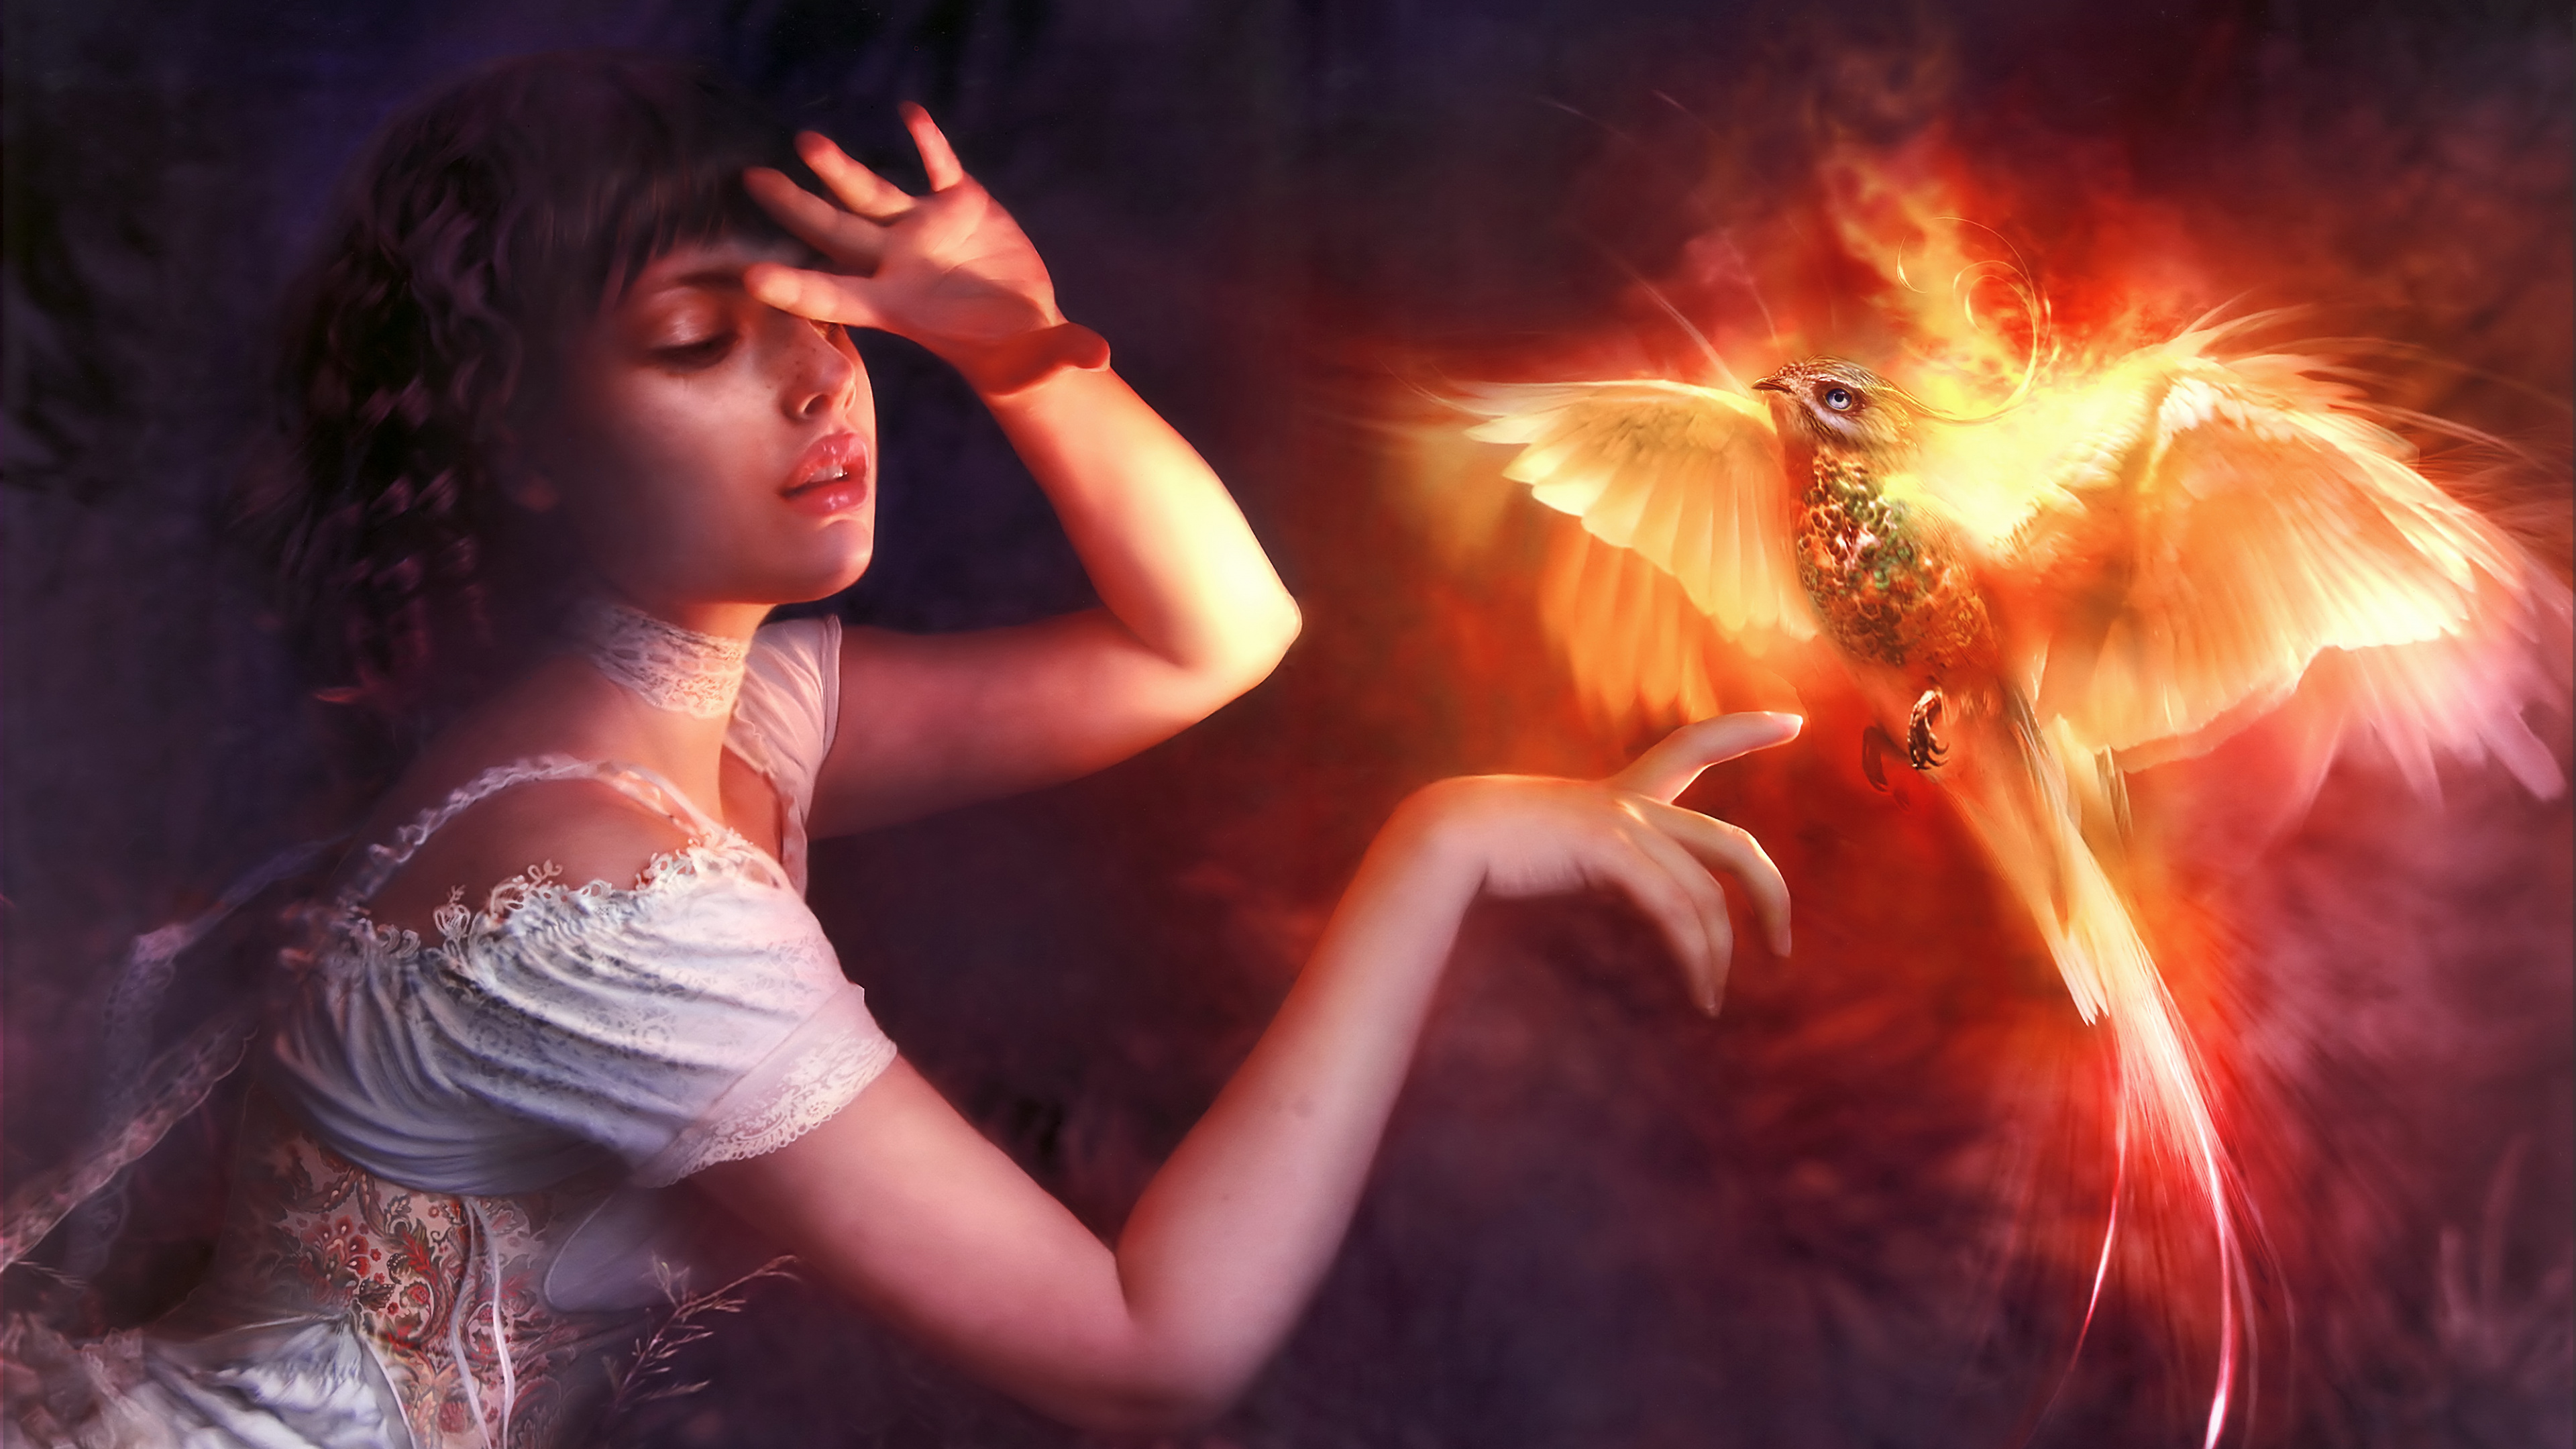 Обои птица феникс с девушкой, Феникс, СУБД Firebird, освещение, Апельсин в разрешении 3840x2160